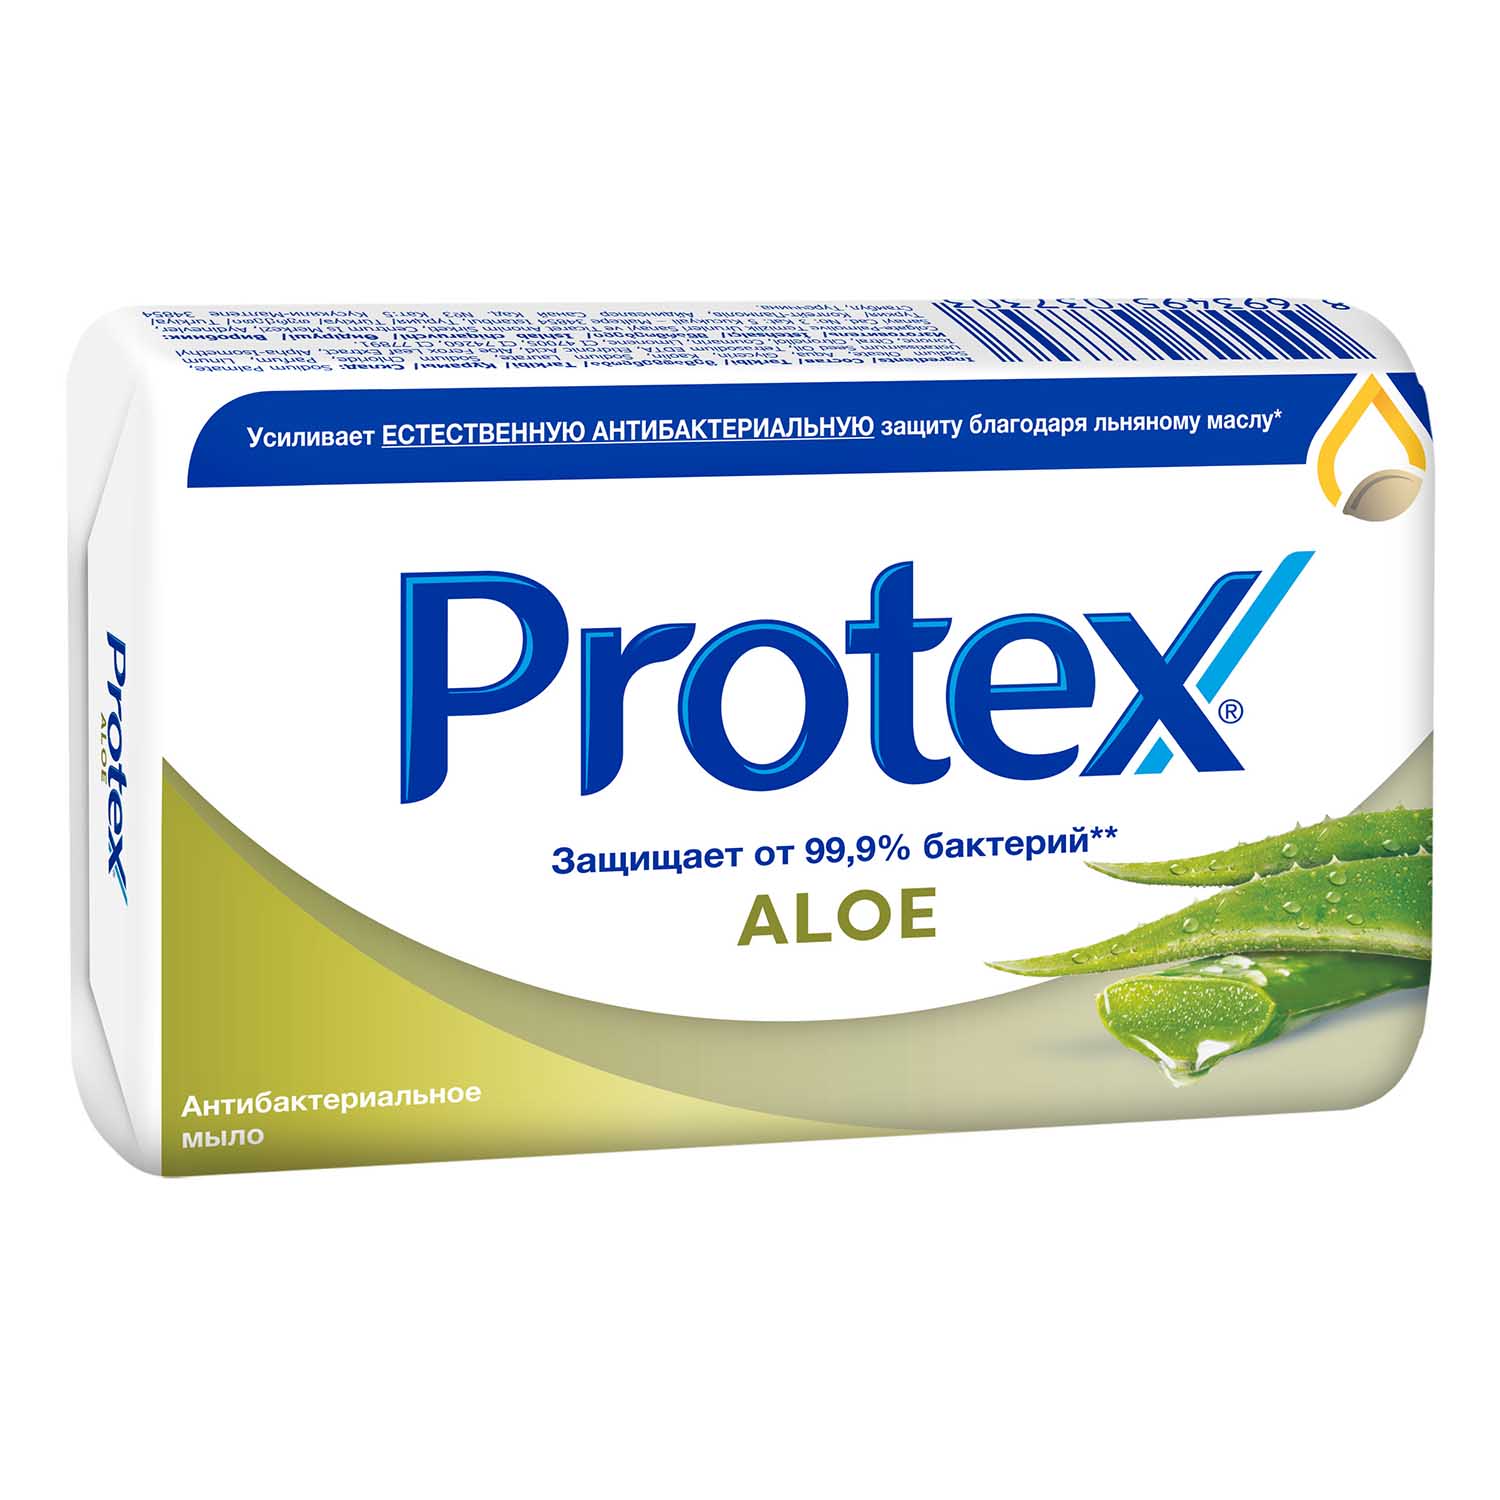 Мыло туалетное Protex Aloe антибактериальное, 90 г мыло protex cream антибактериальное 90 г